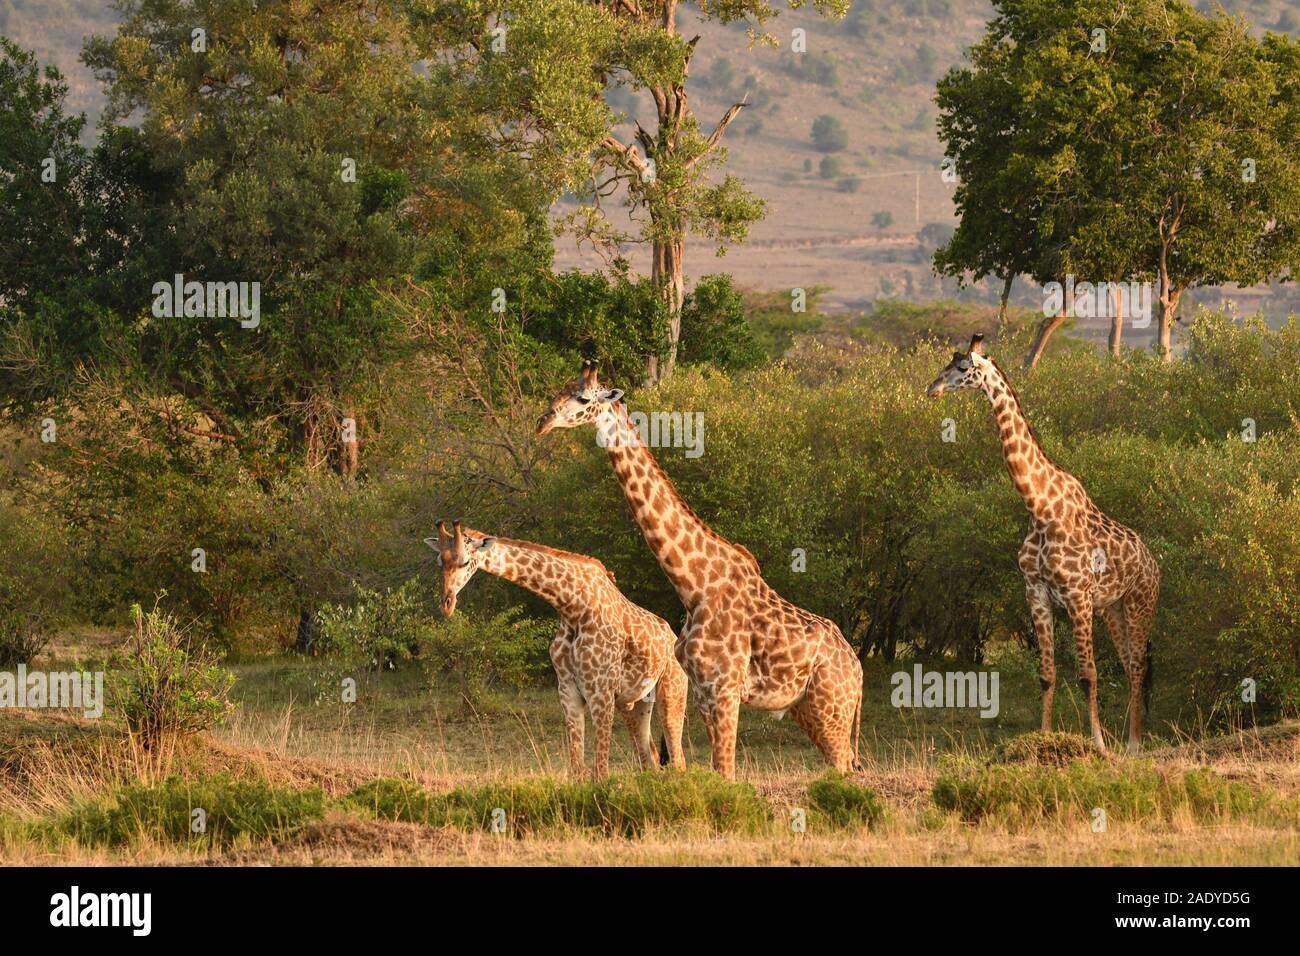 Una manada de jirafas fotografiados en la madrugada de Masai Mara de Kenia Foto de stock